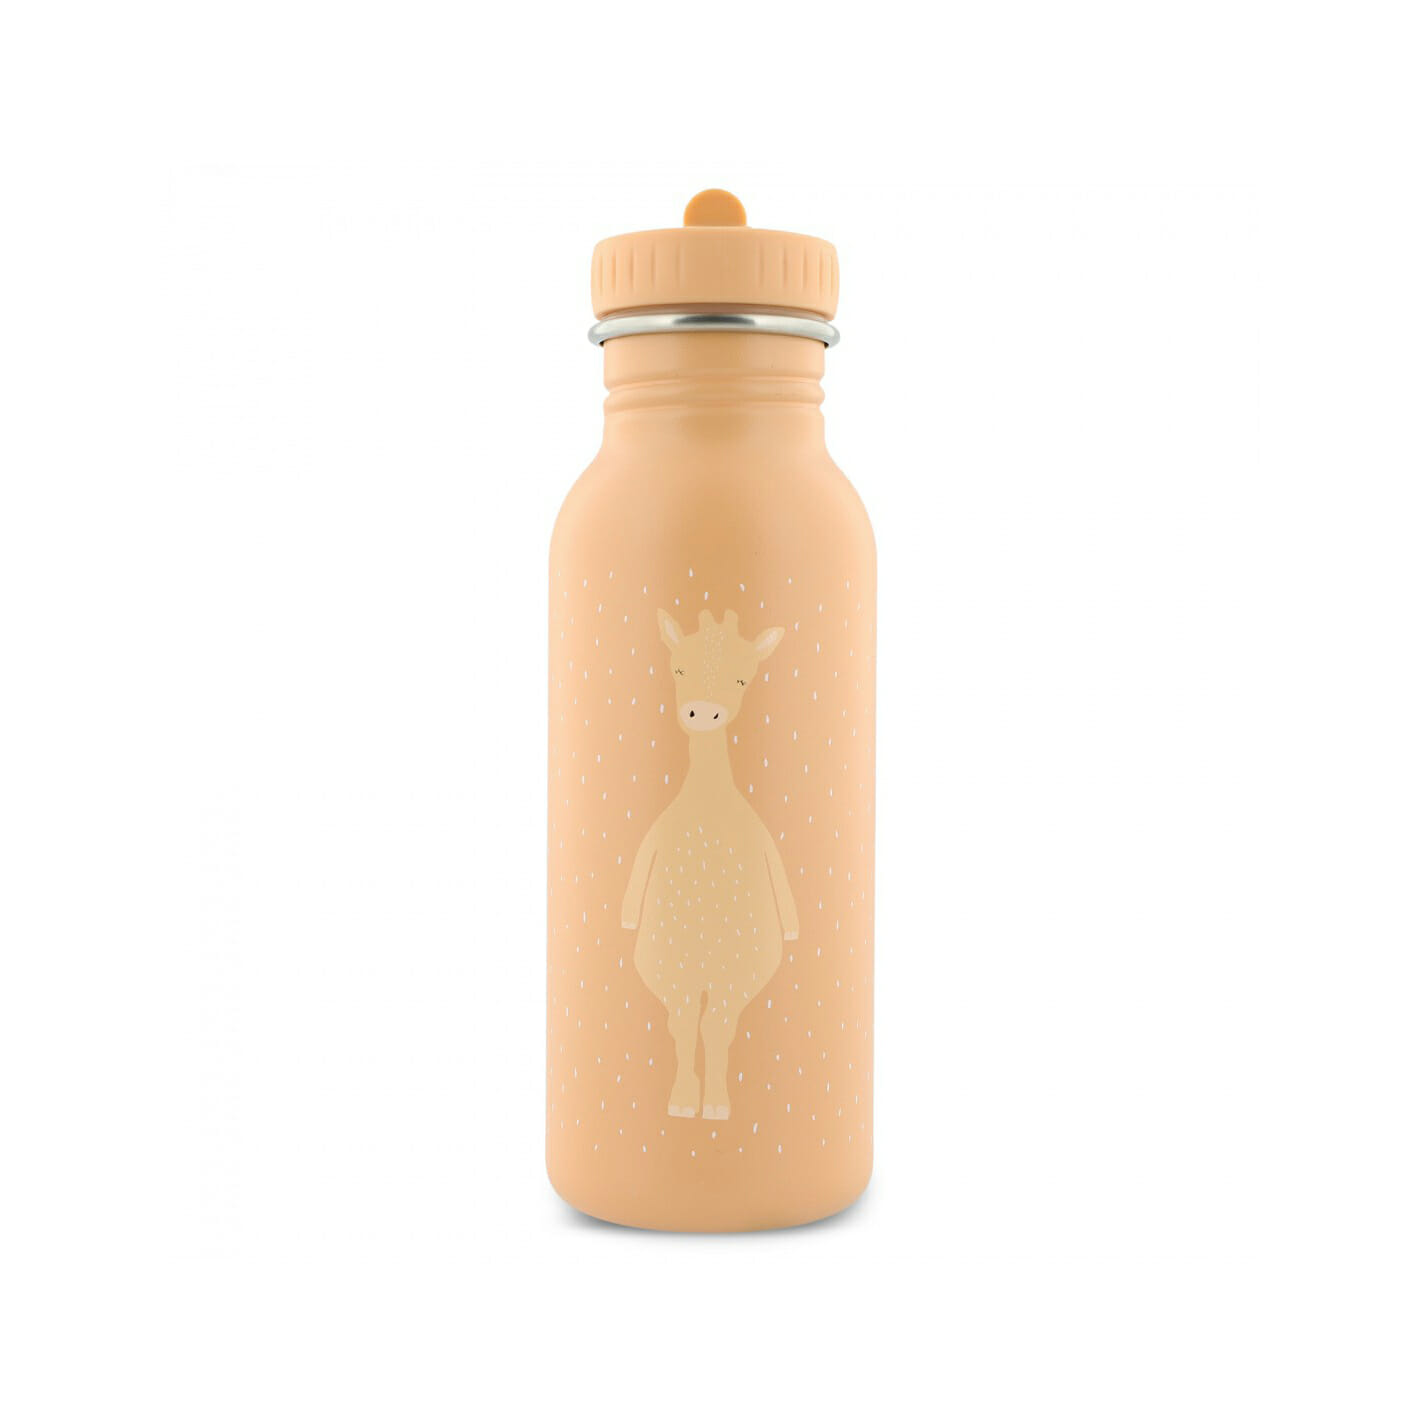 bottle-500ml-mrs-giraffe.jpg